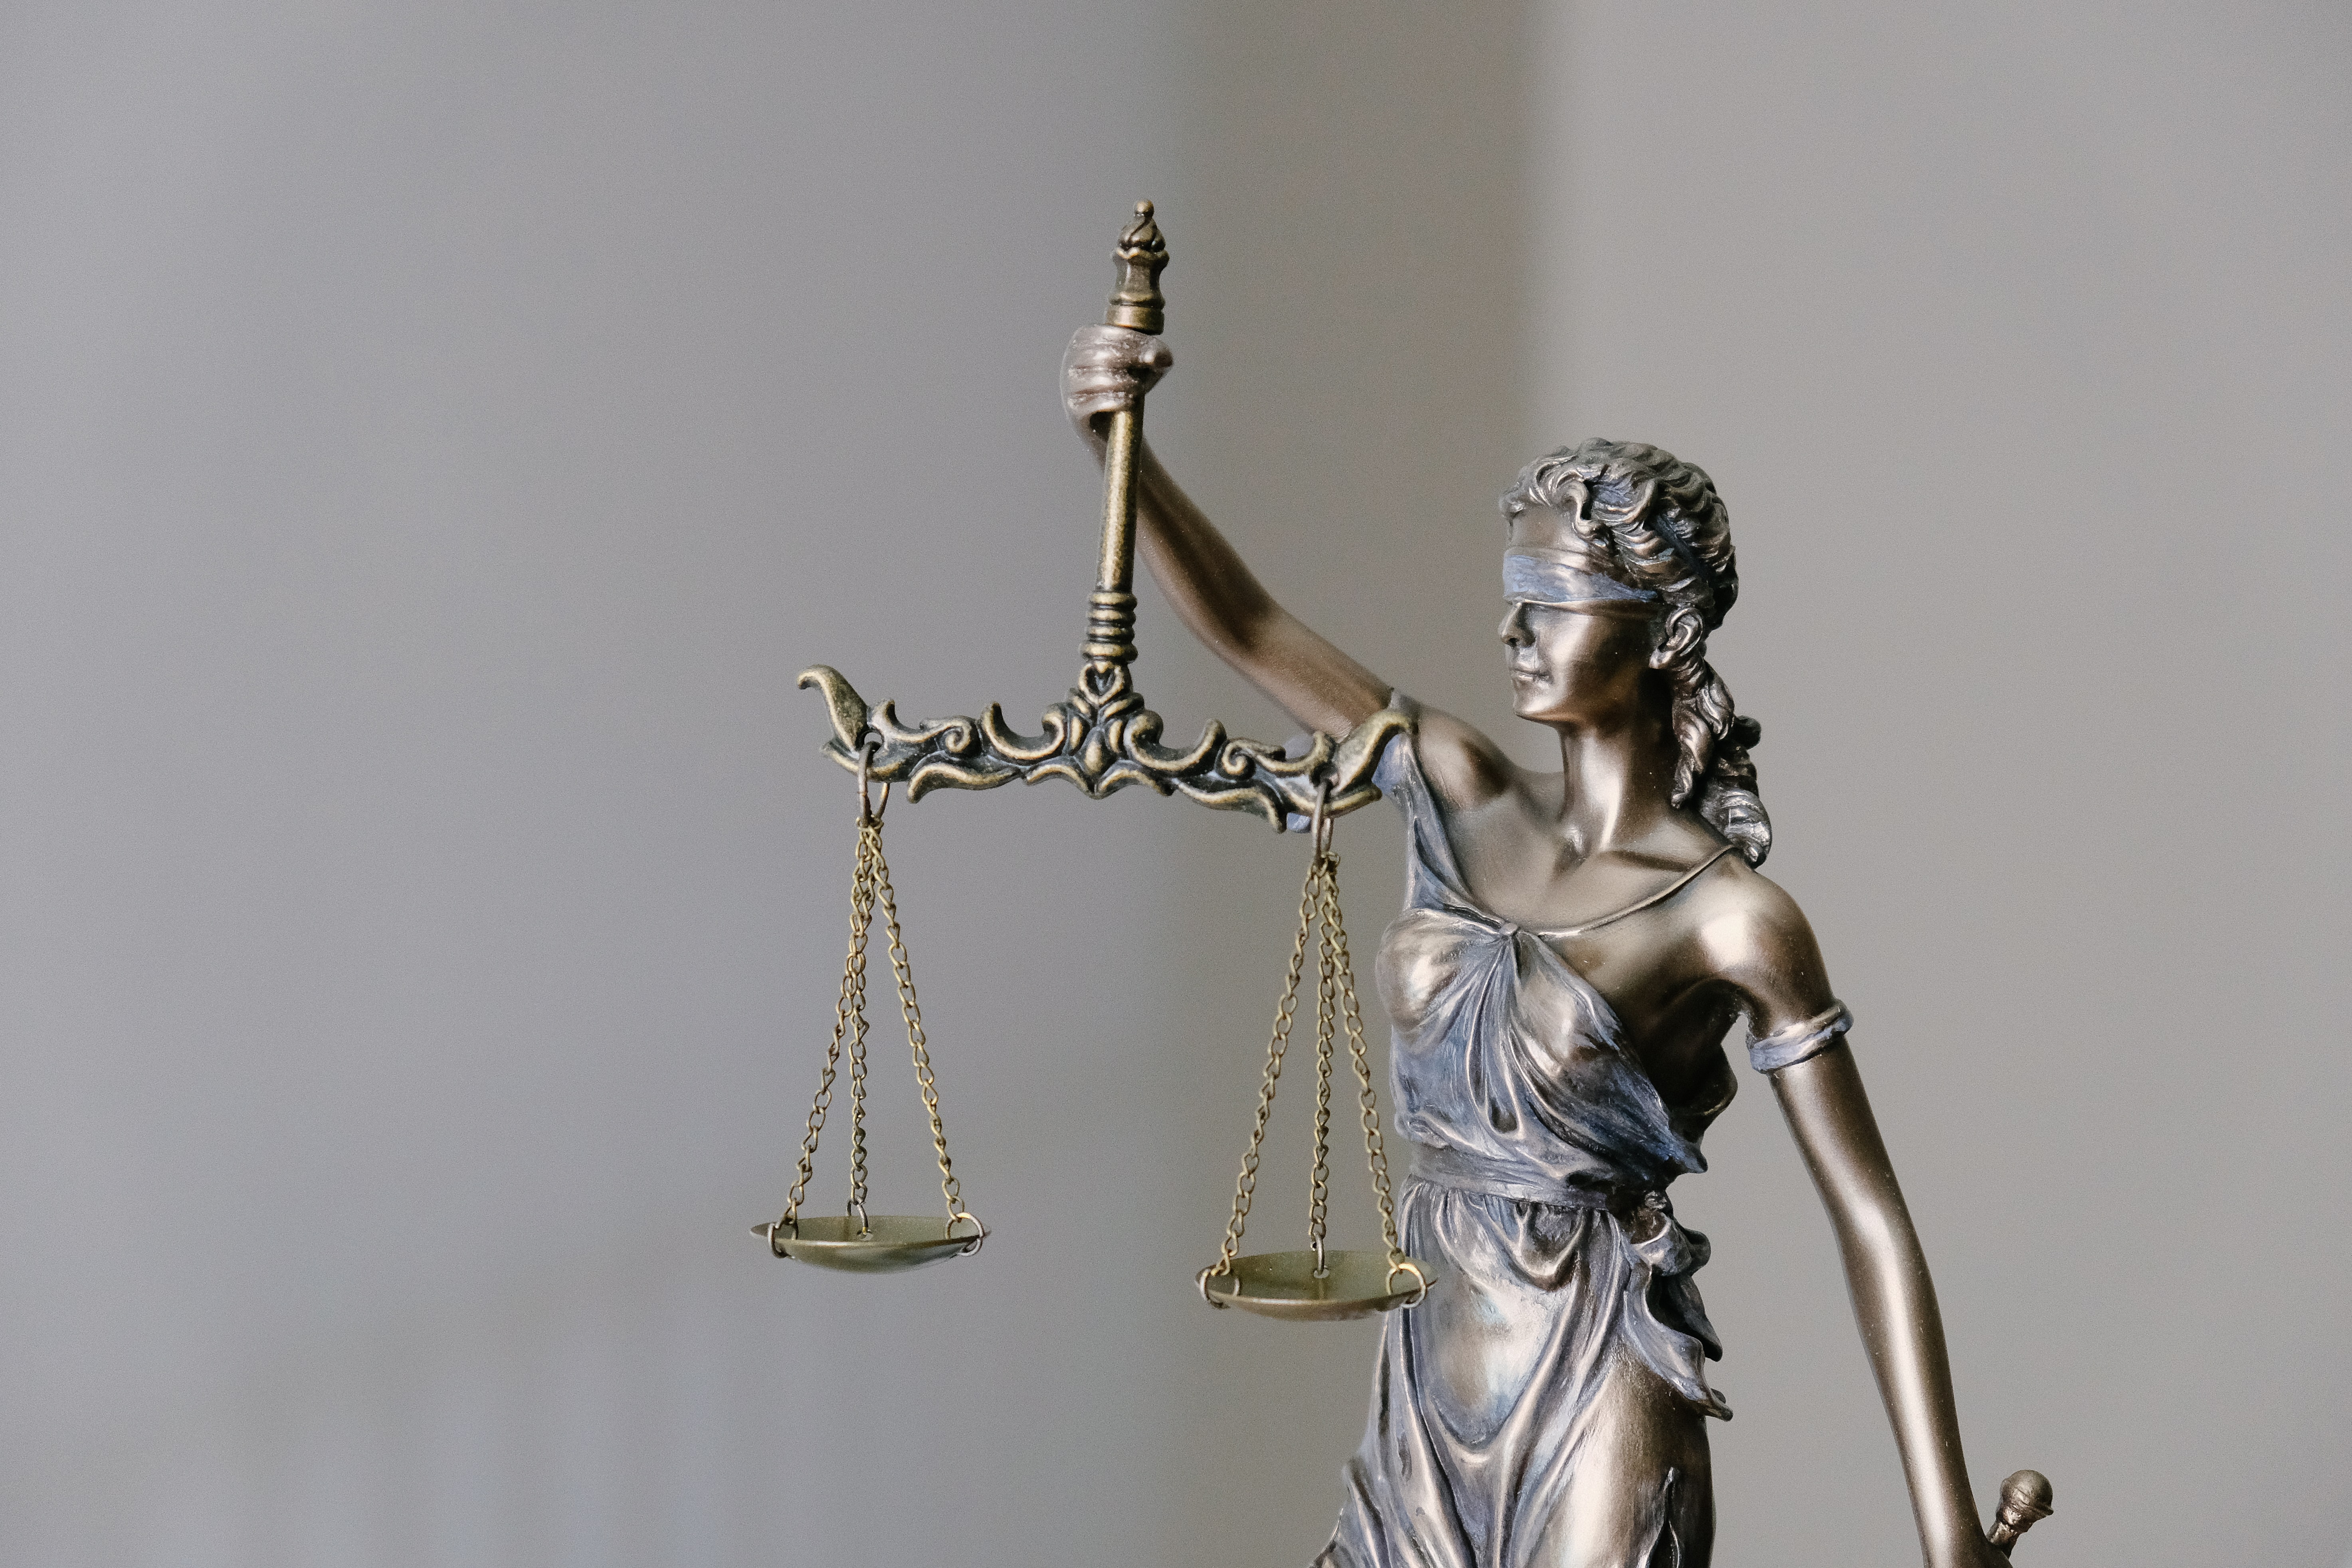 Imagem com o símbolo do curso do Direito, a balança.